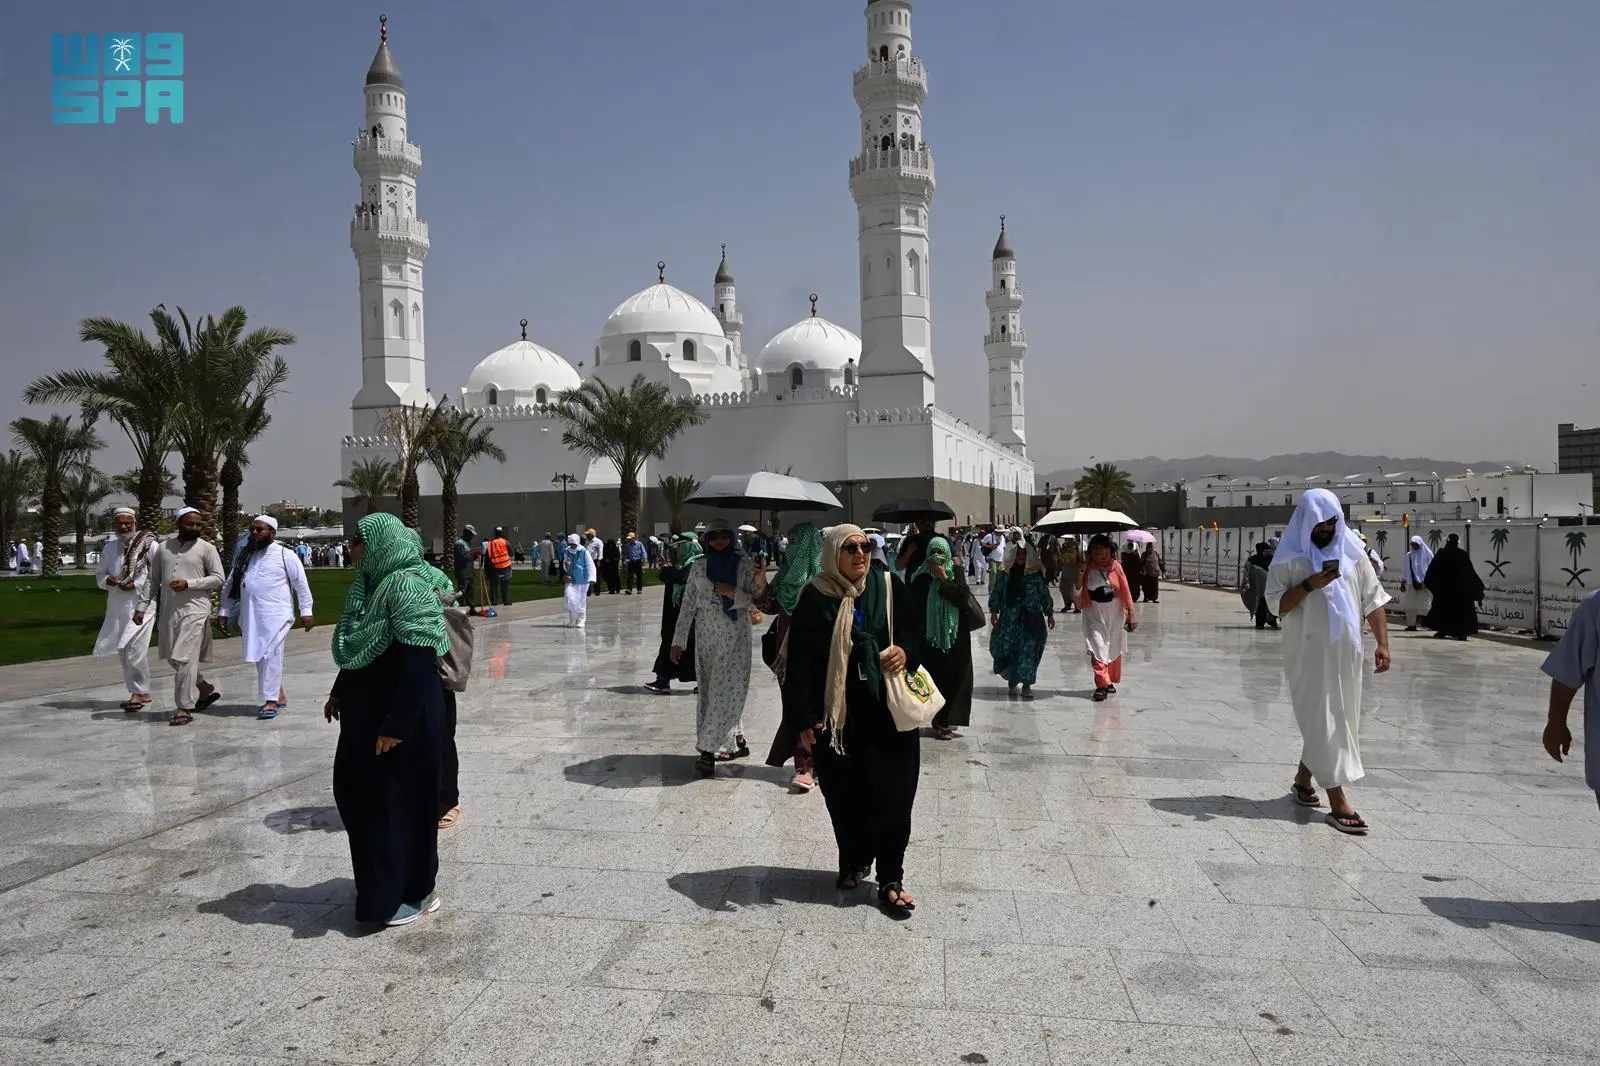 مسجد قباء بالمدينة المنورة مقصداً لضيوف الرحمن بعد المسجد النبوي